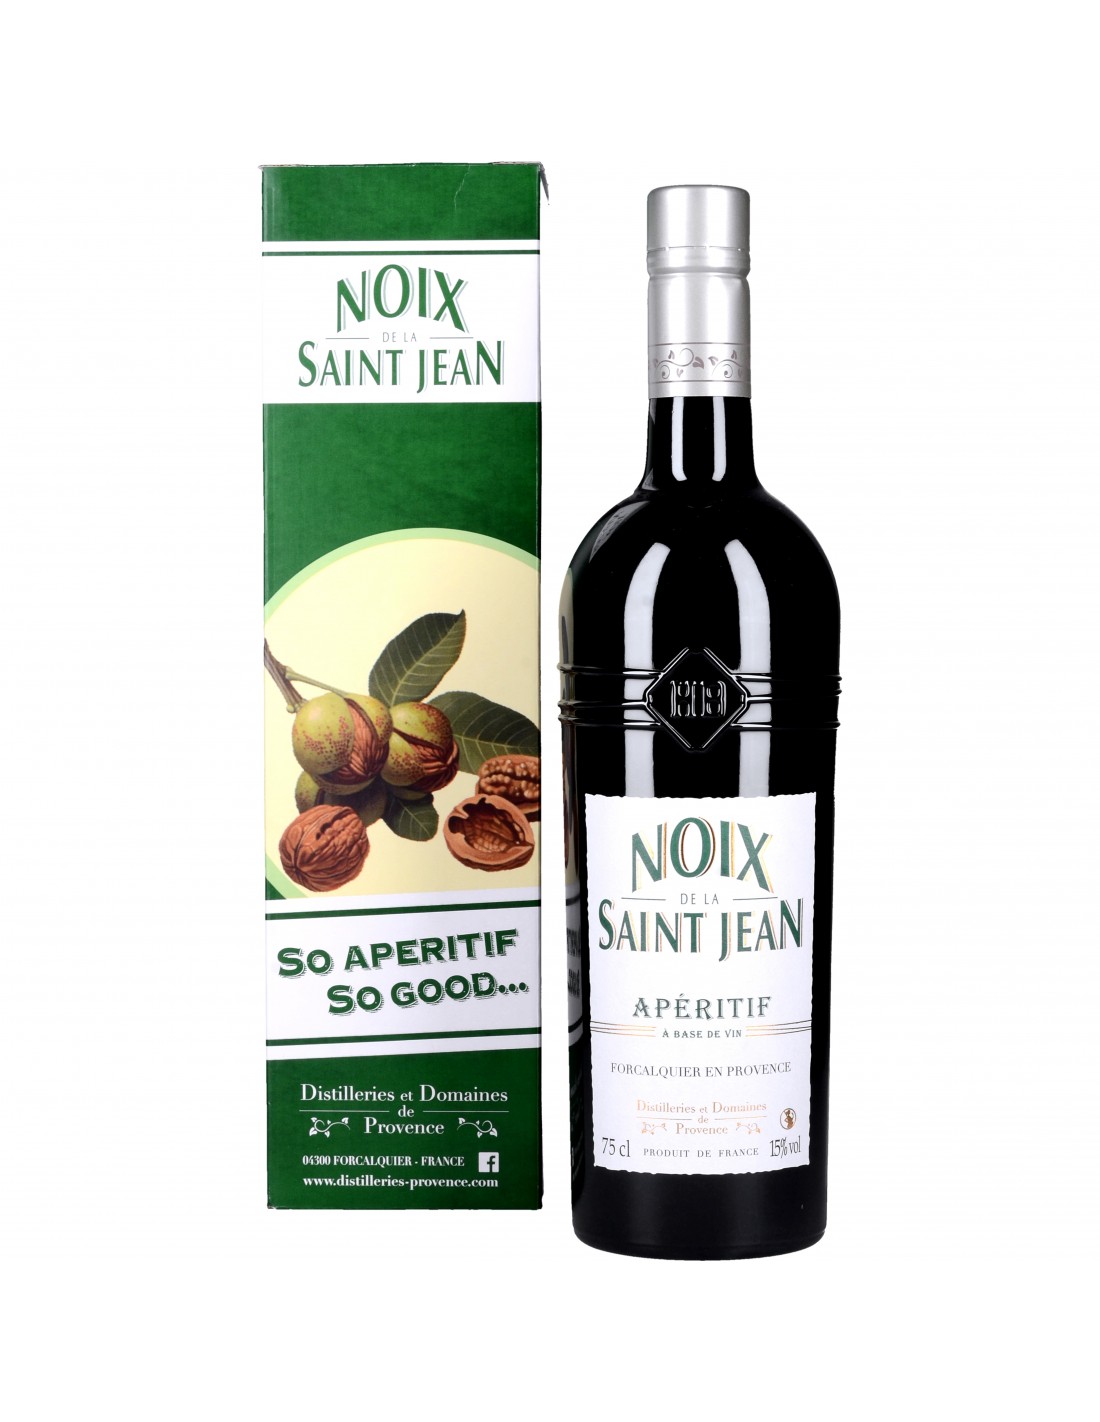 Vin de noix vertes de la St-Jean – Sauvages & Gourmandes